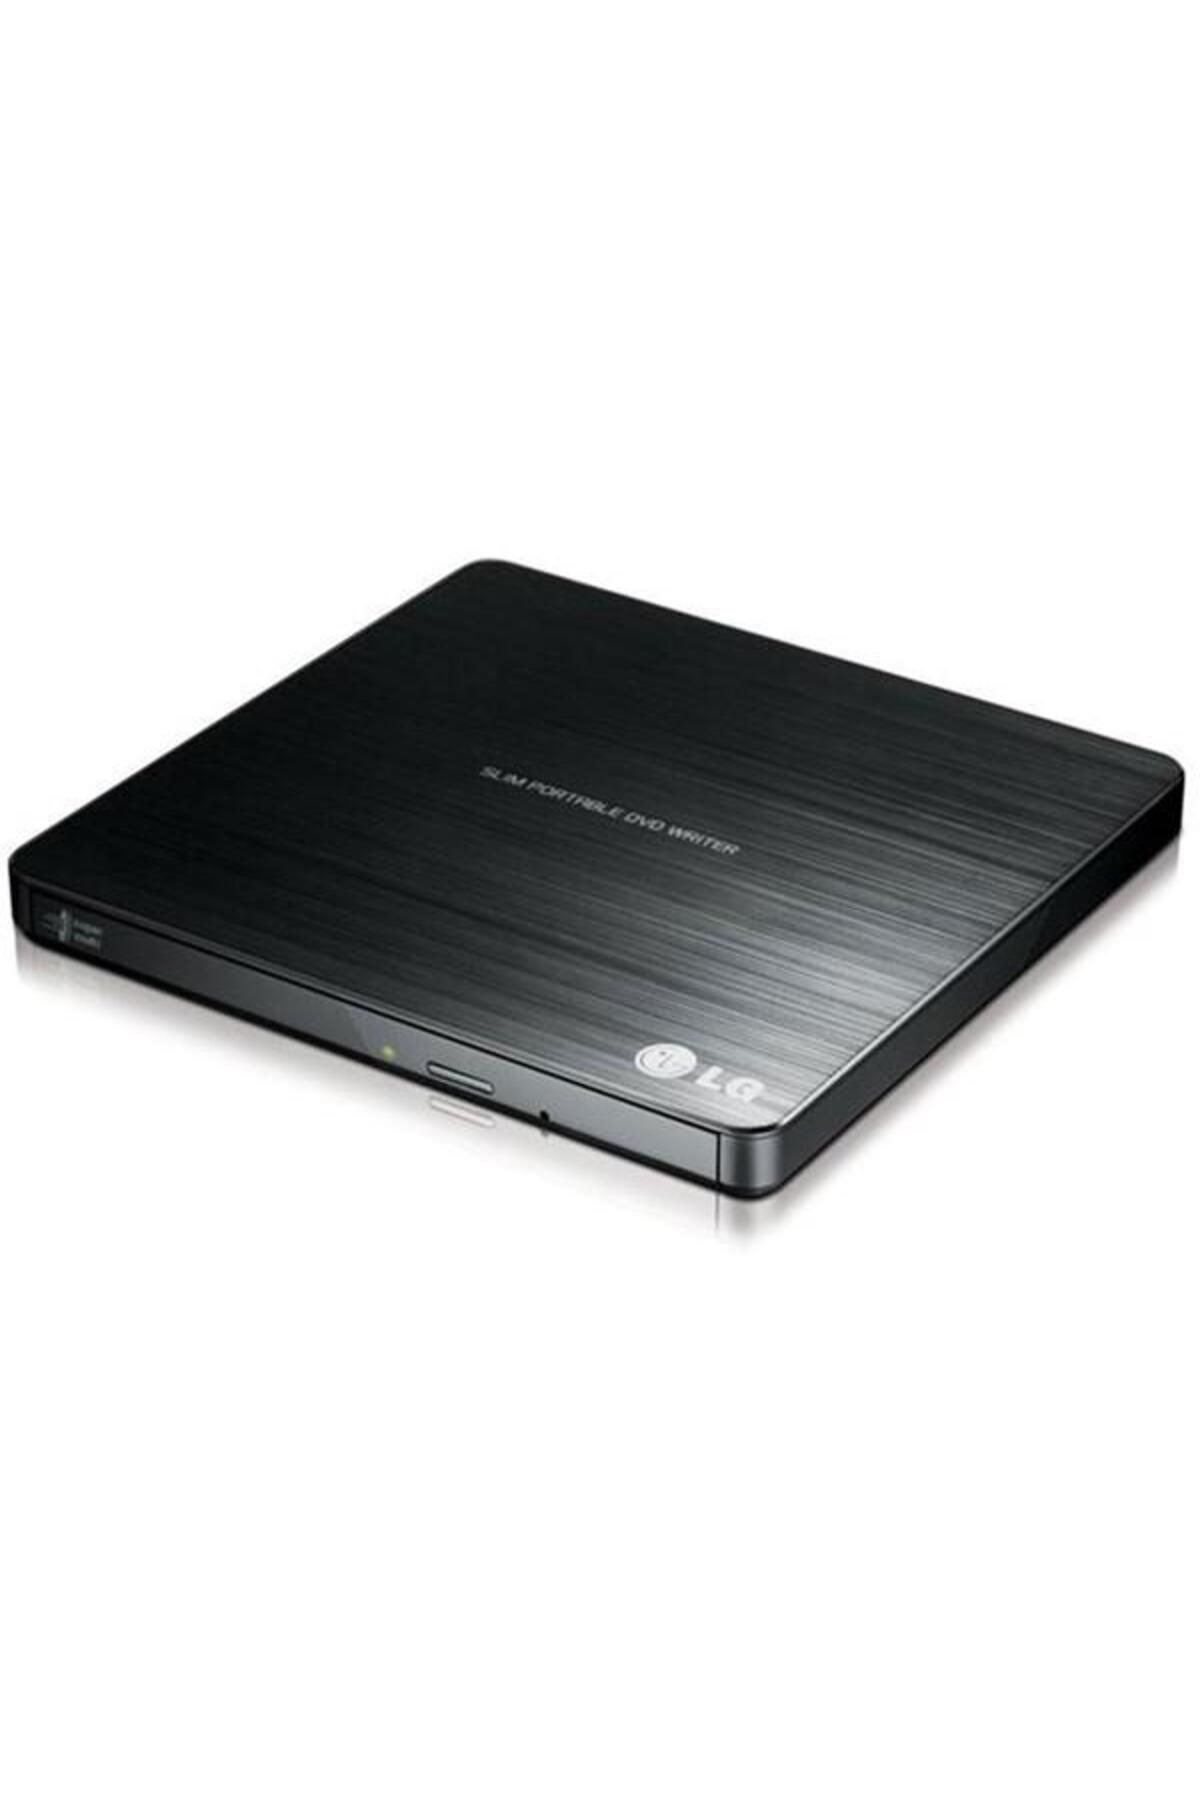 LG 8x Gp60nb50 Usb 2.0 Slim Harici Dvd Yazıcı Siyah